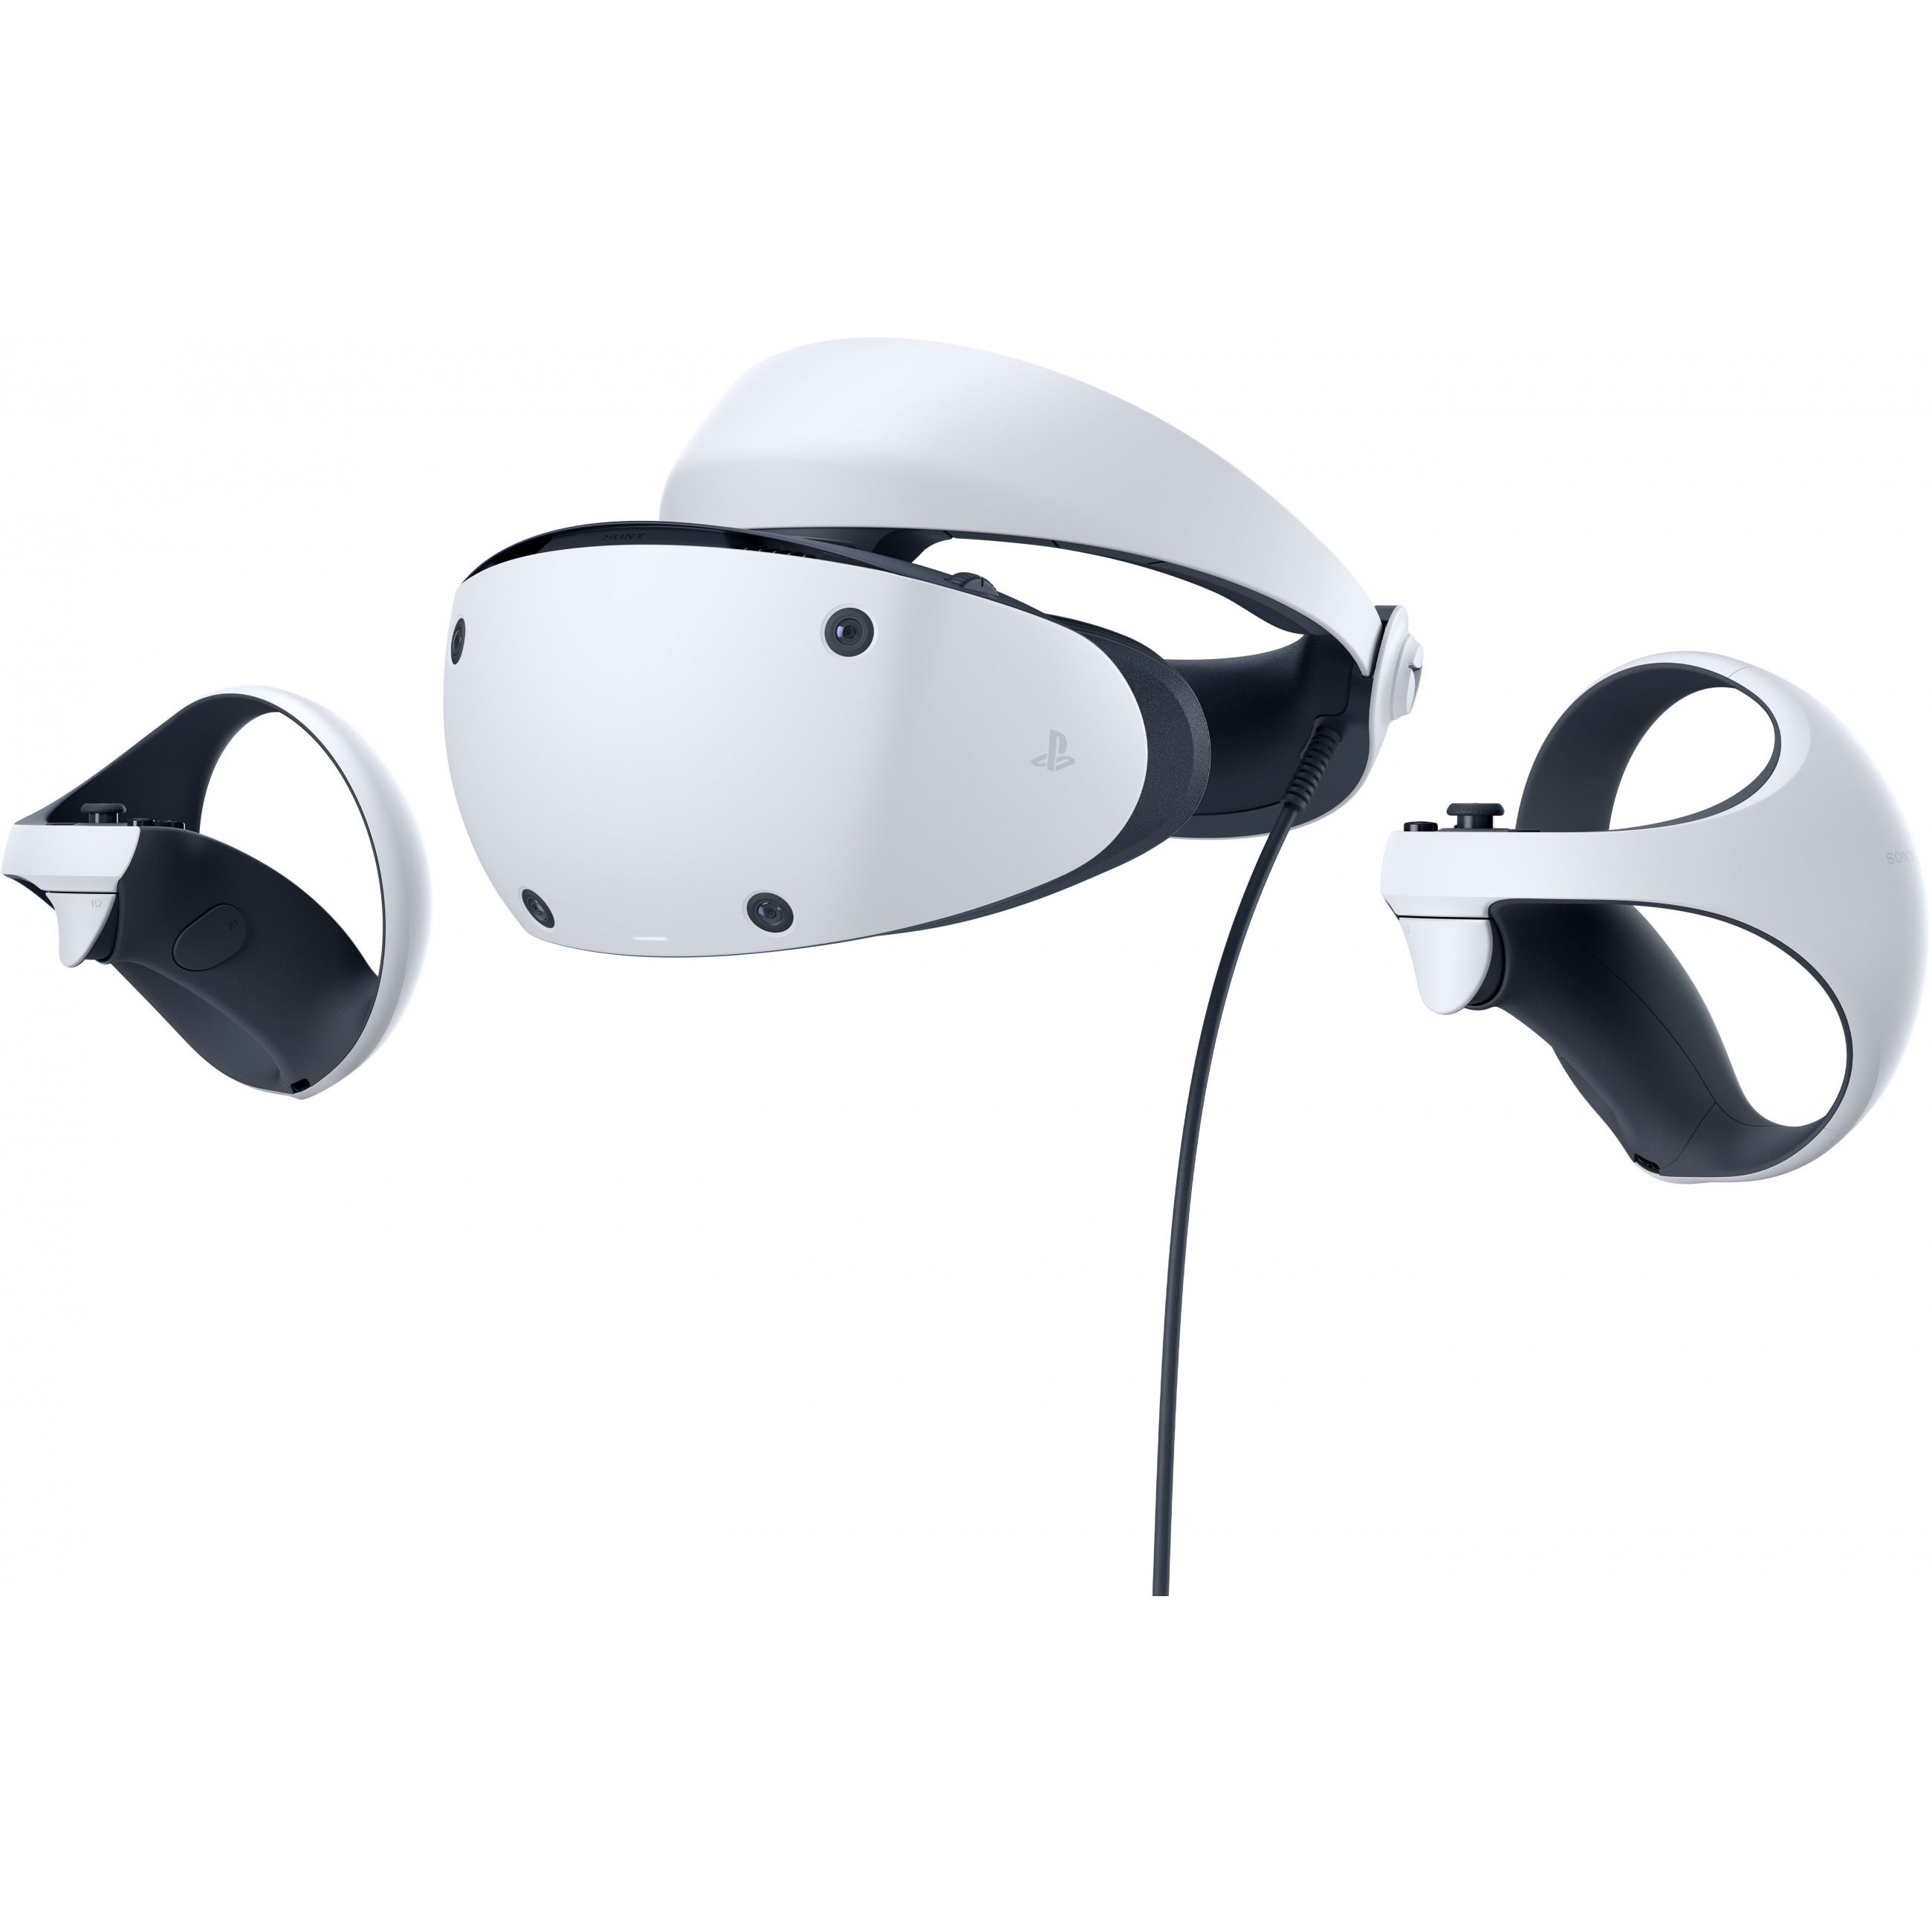 Sony PlayStation VR2 Dediziertes obenmontiertes Display Schwarz Weiß